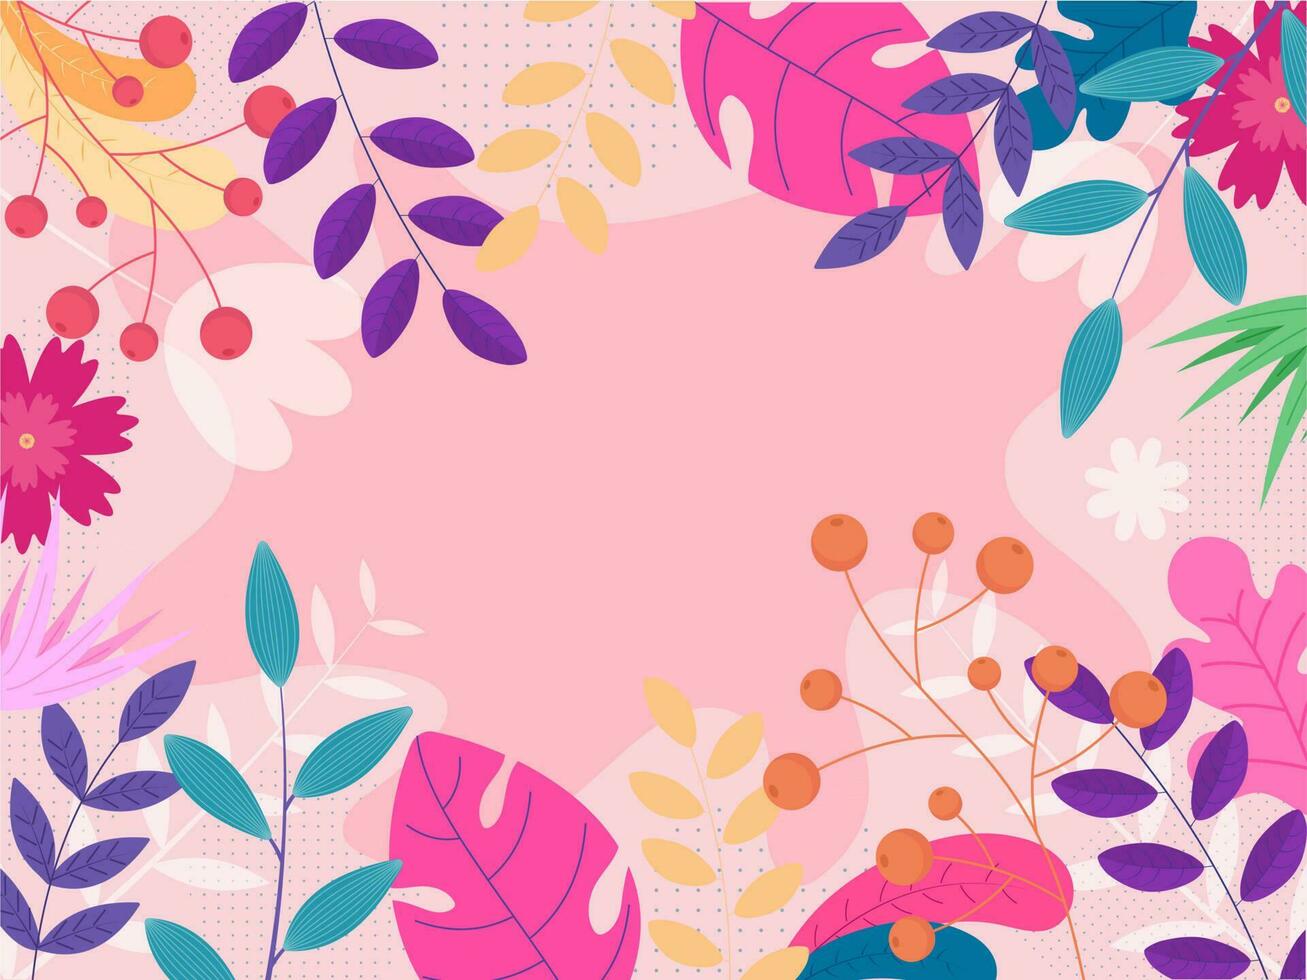 färgrik blommor med löv och bär grenar dekorerad på pastell rosa bakgrund. vektor